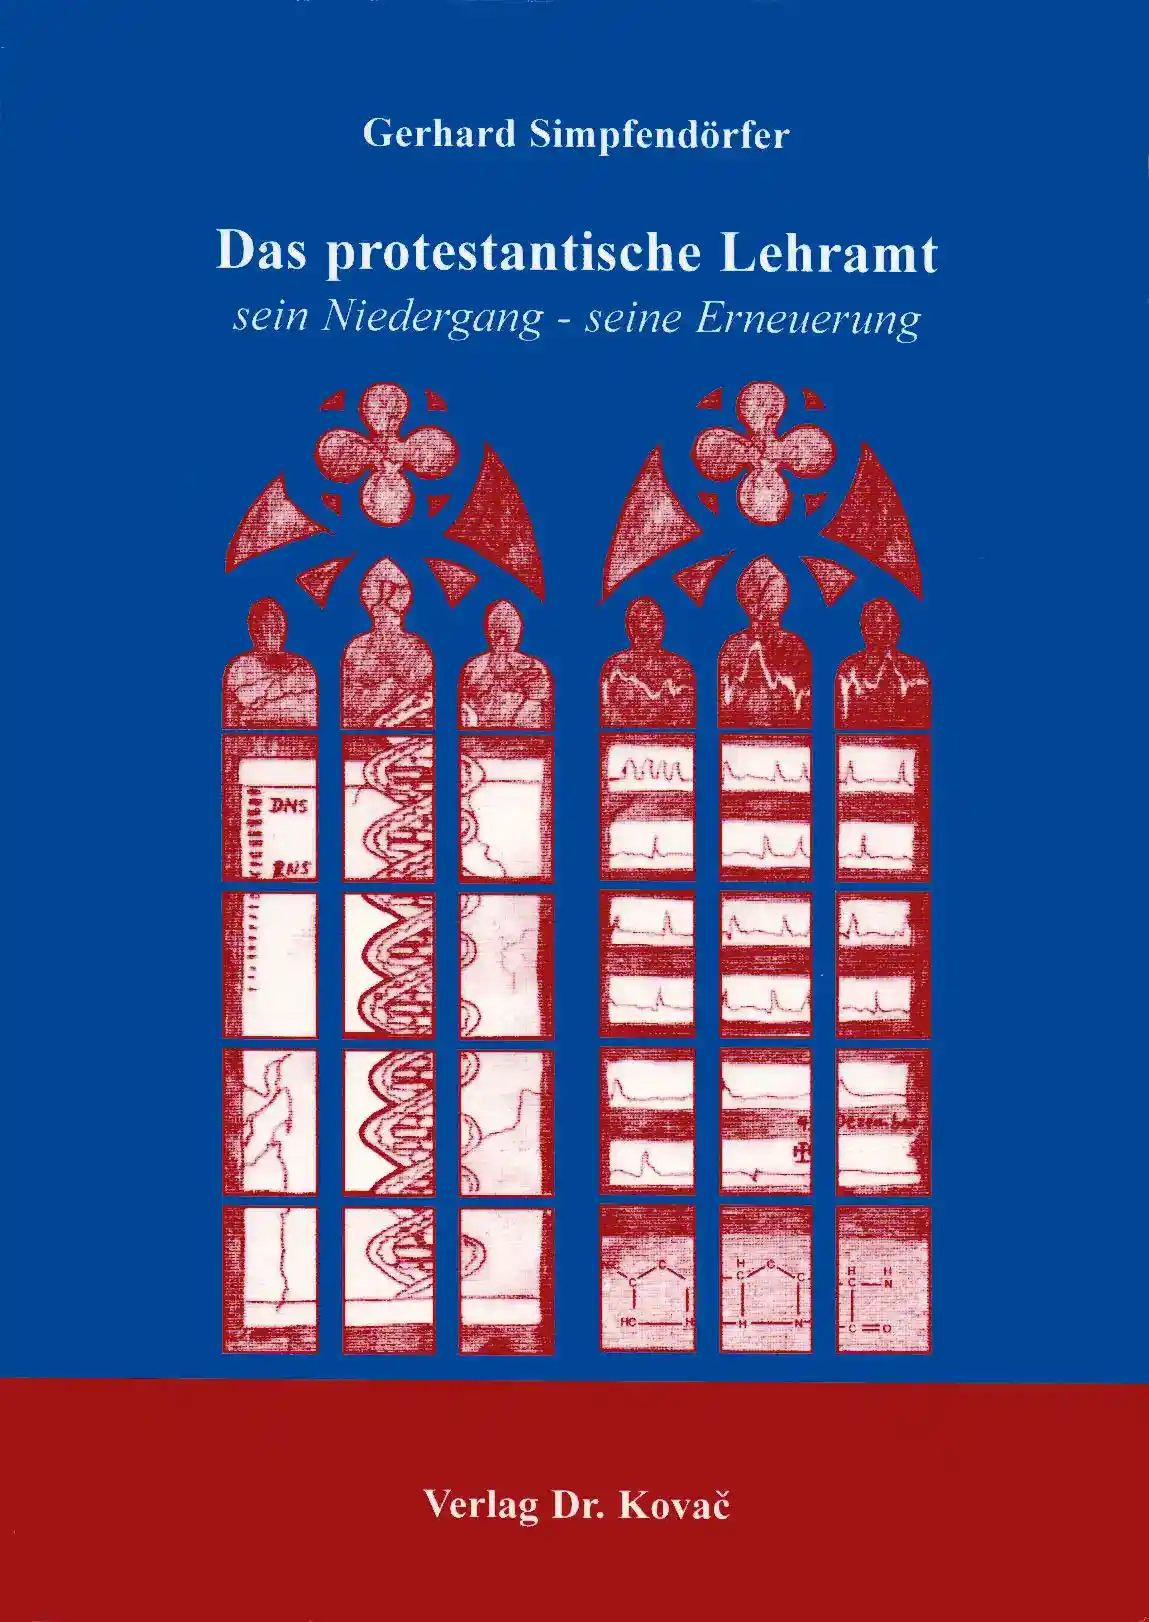 Das protestantische Lehramt (Forschungsarbeit)